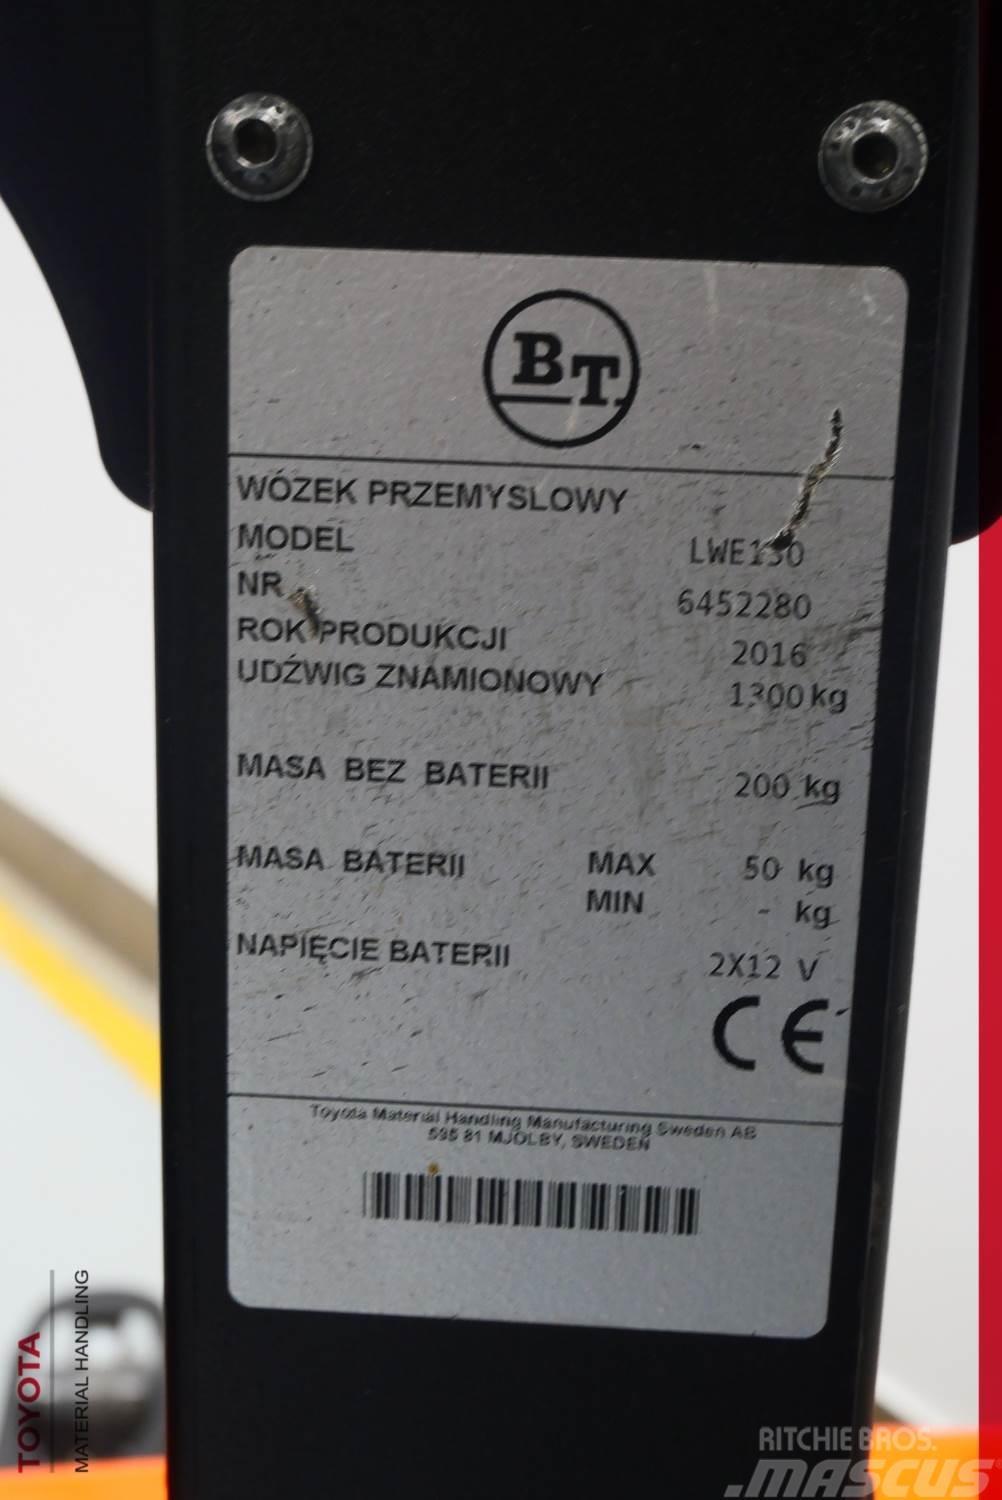 BT LWE130 Electro-pallettrucks